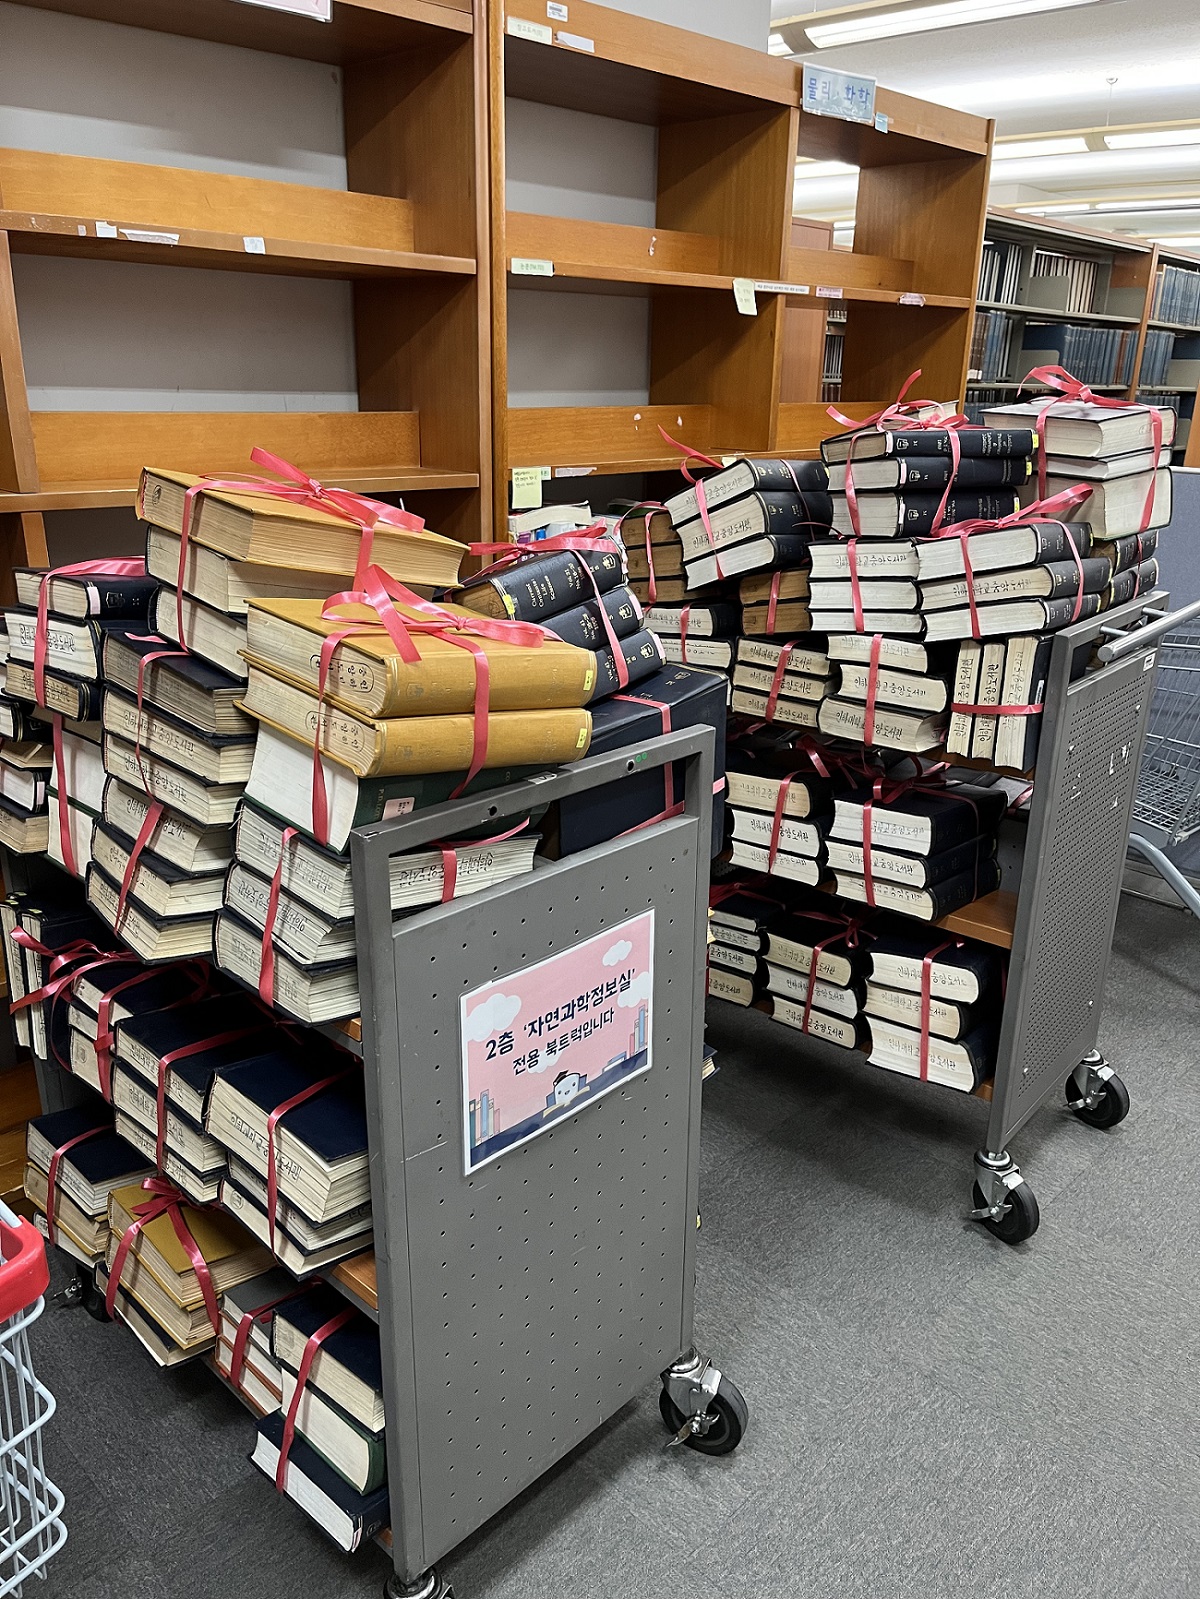 [보도] 작년 한 해만 5만 권 폐기, 과부하에 걸린 도서관